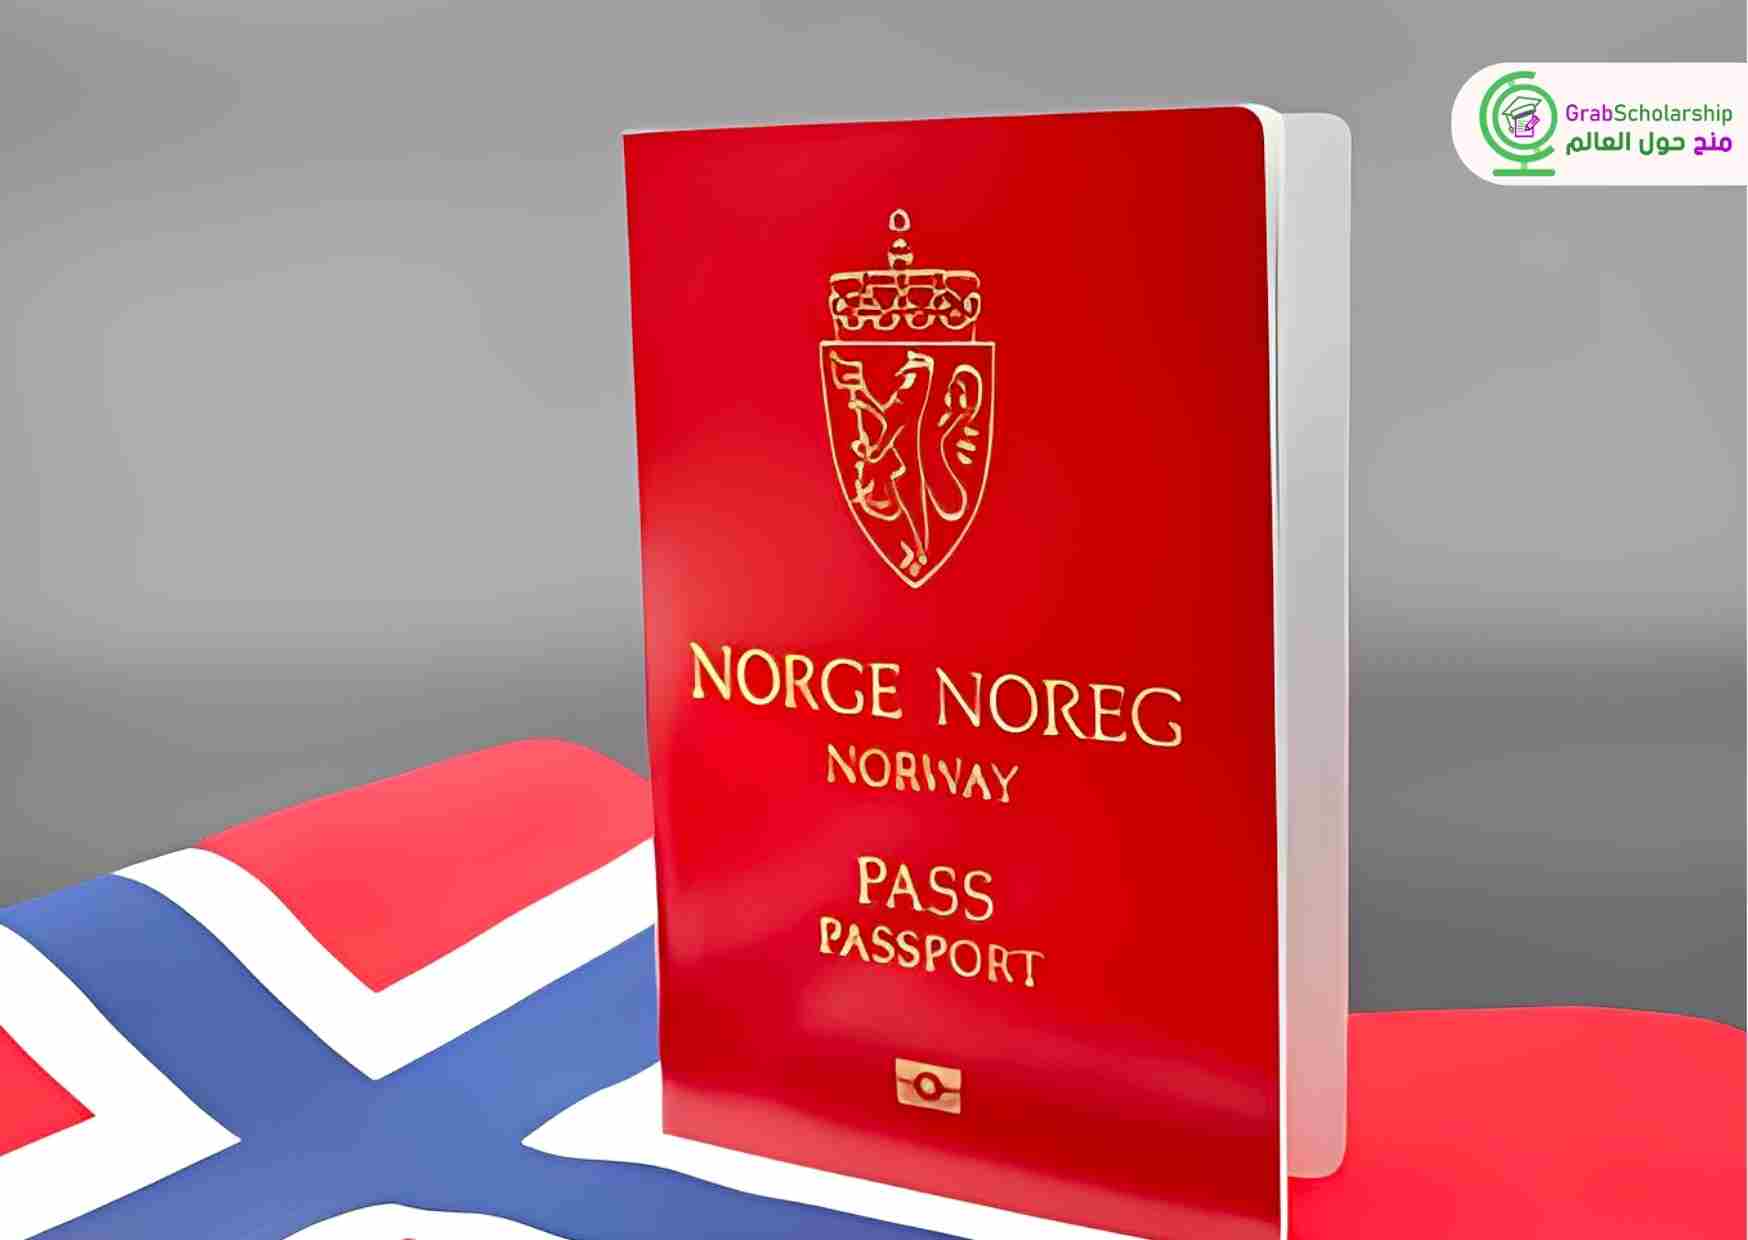 وظيفة براتب 4300 يورو للعمل في النرويج بعقد دائم